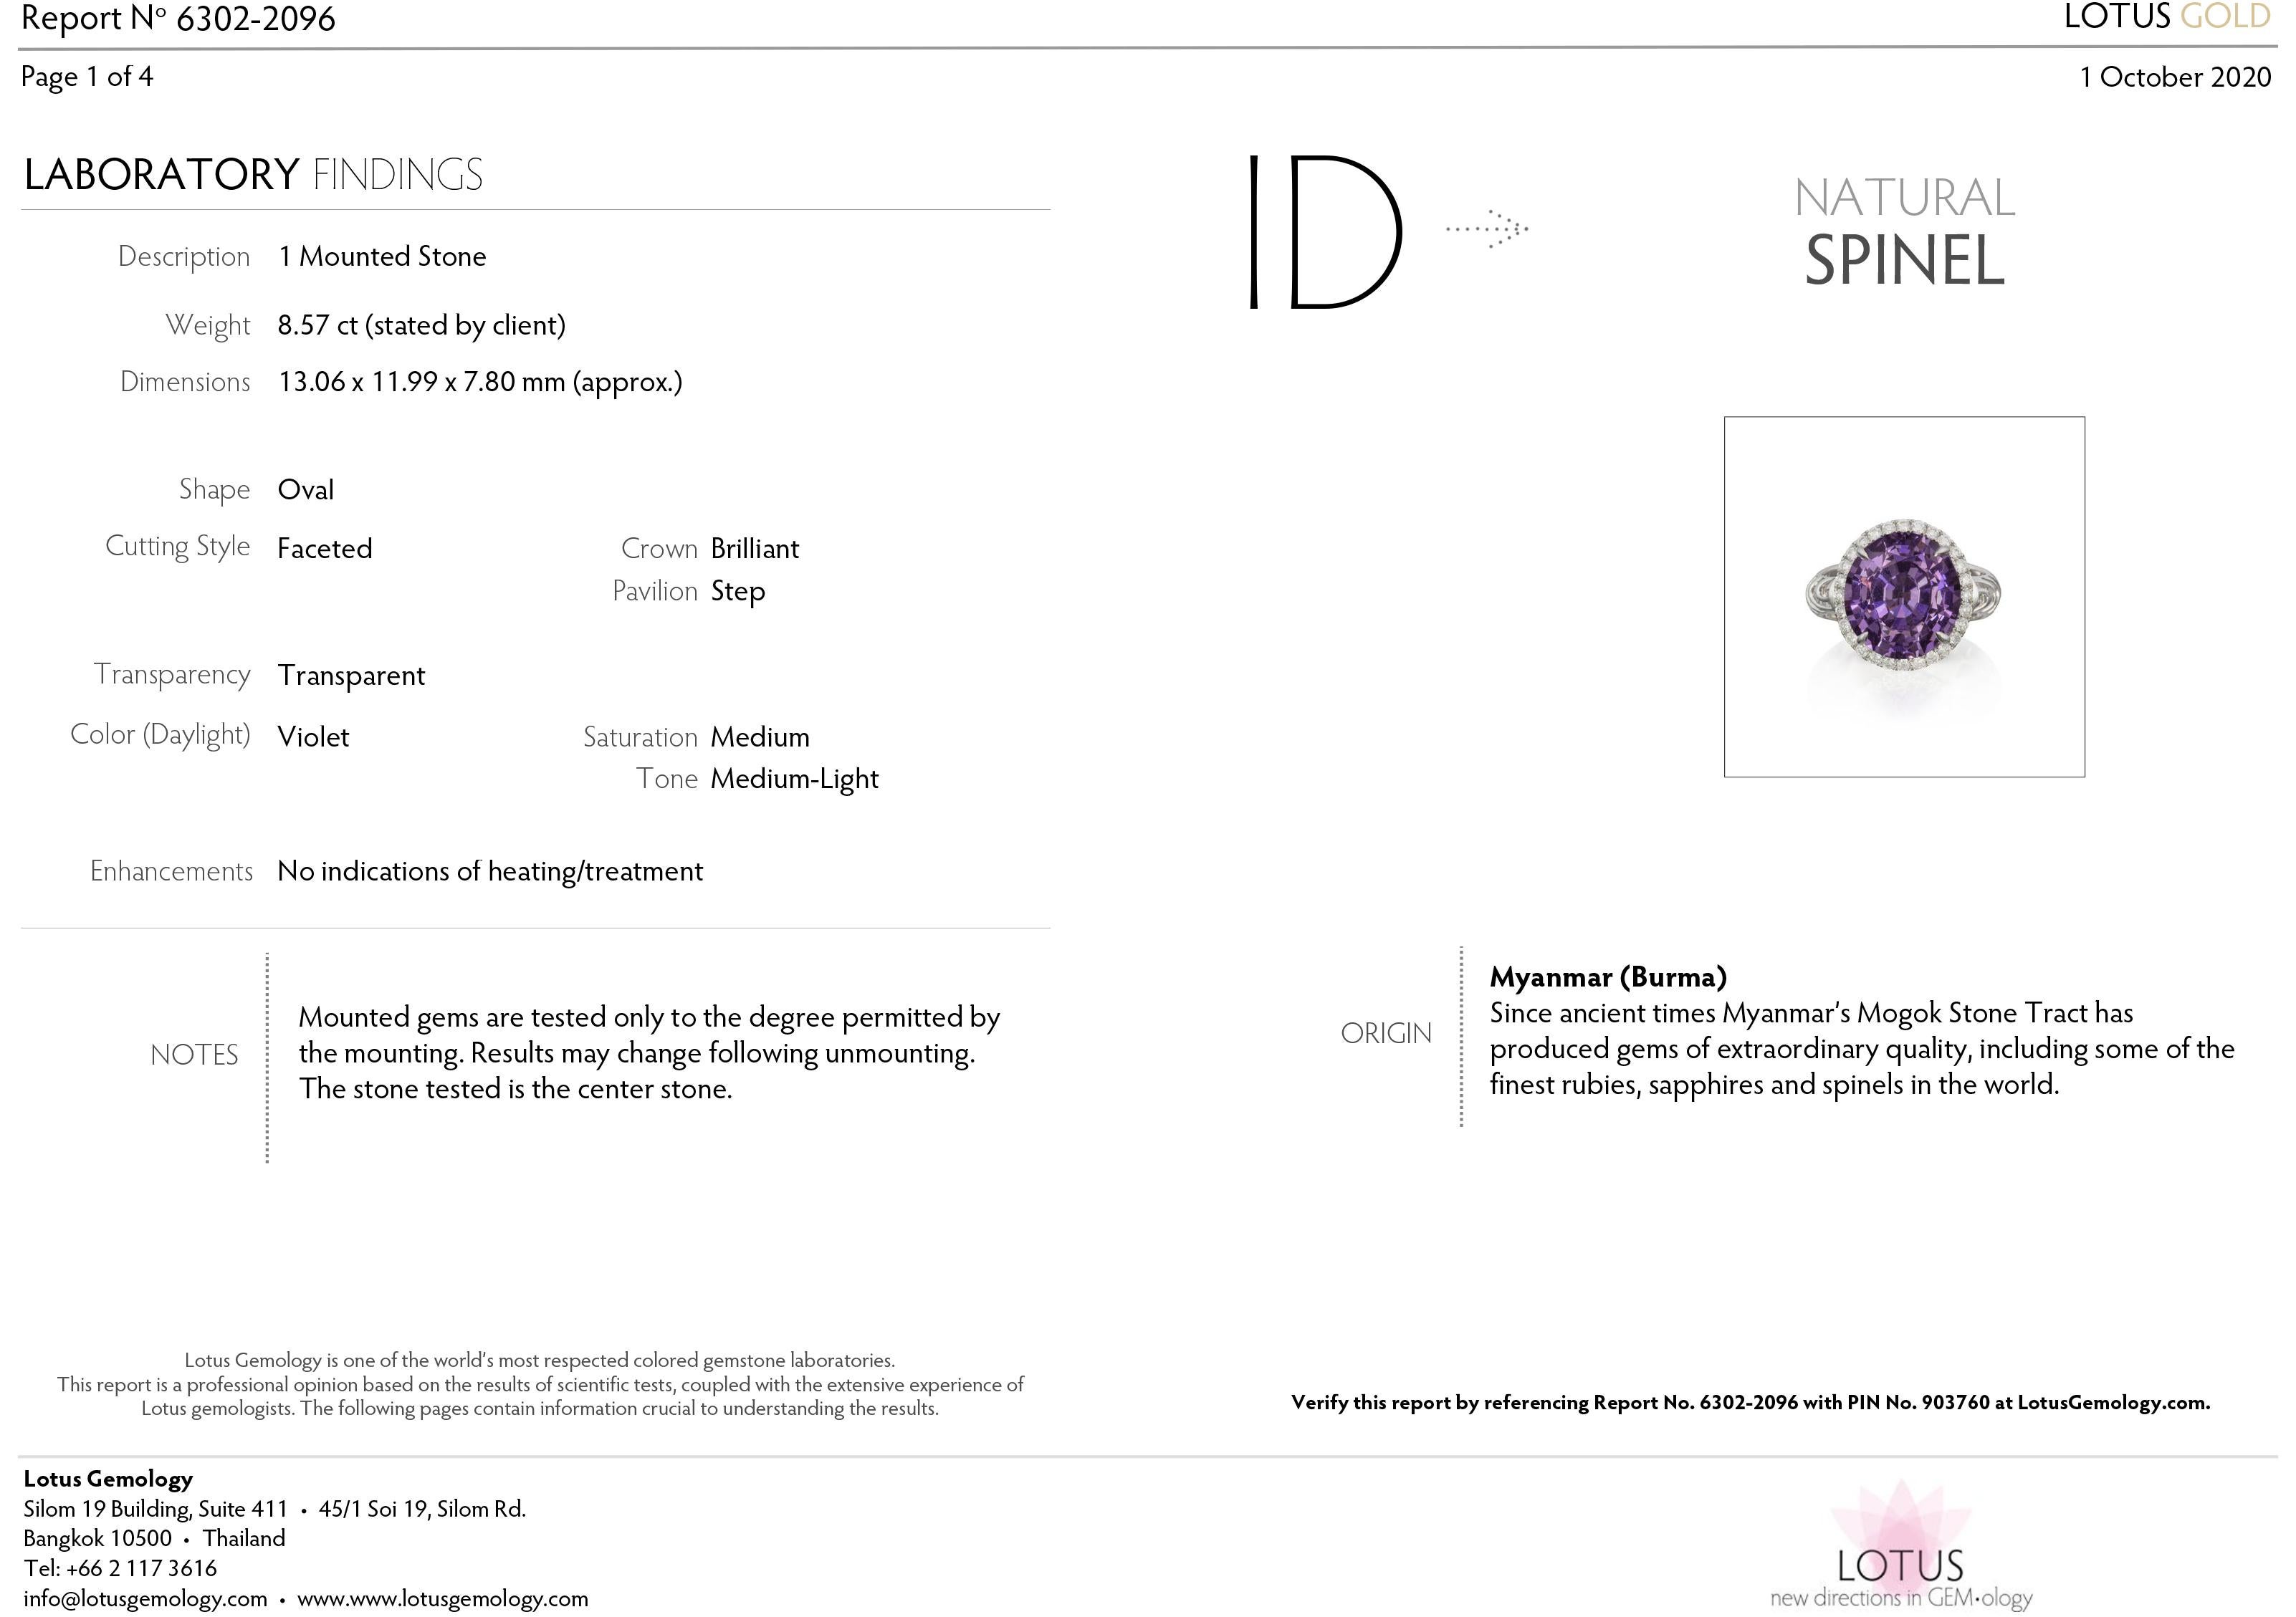 Women's or Men's Lavender Spinel Ring, 18 K White Gold and Diamonds Lavender Spinel Ring For Sale